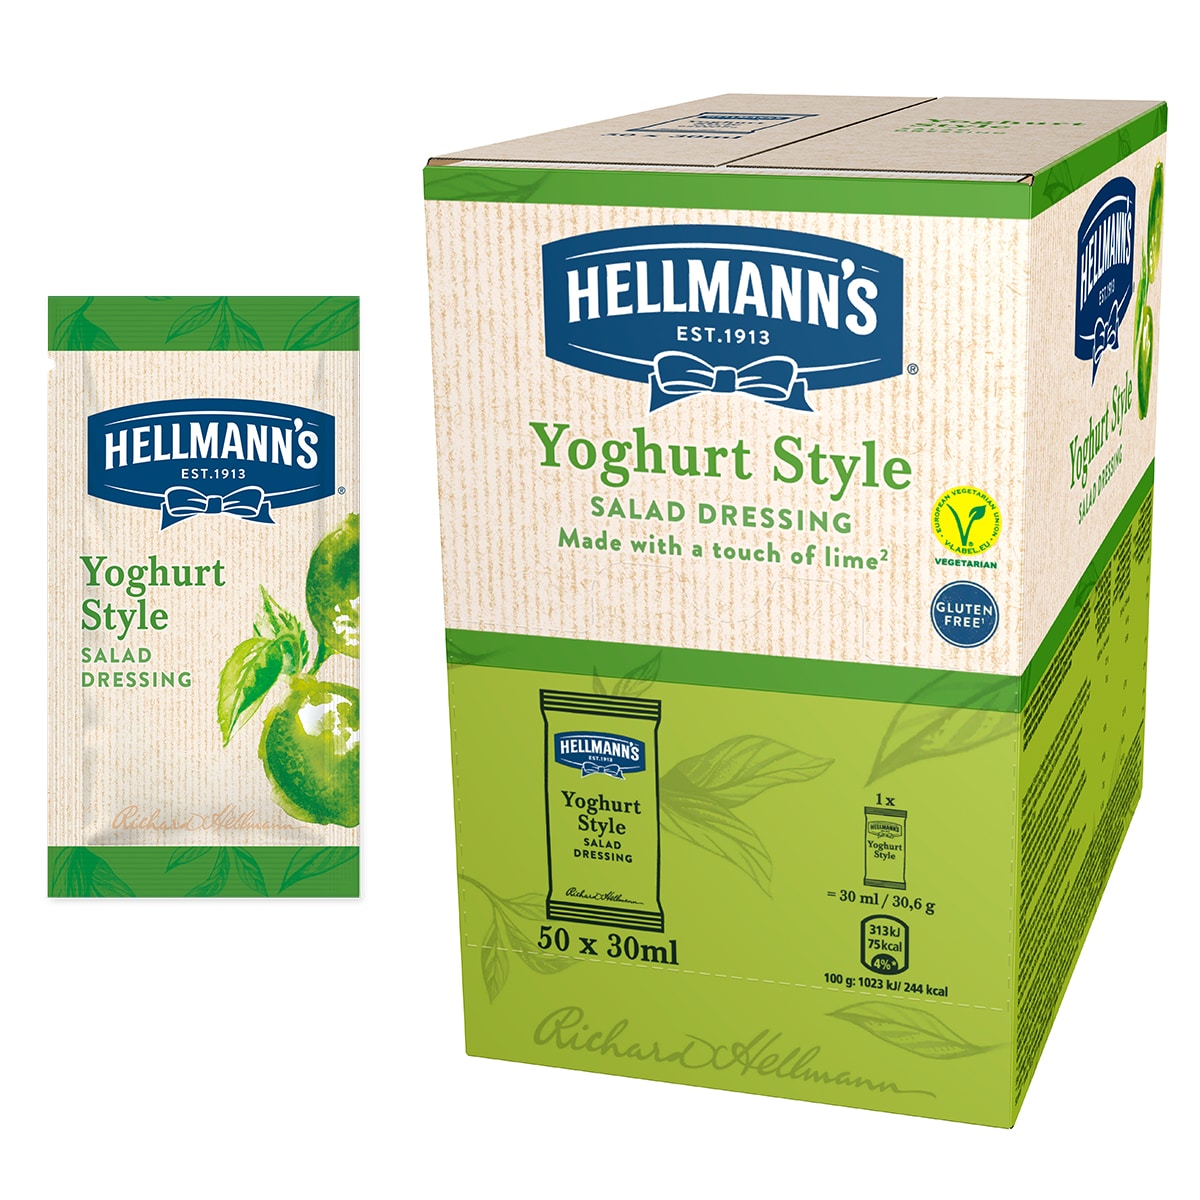 Salatni preljev s okusom jogurta i limete - Hellmann’s salatni preljevi, idealni za poboljšanje okusa vaših salata u prigodnom porcijskom pakiranju.